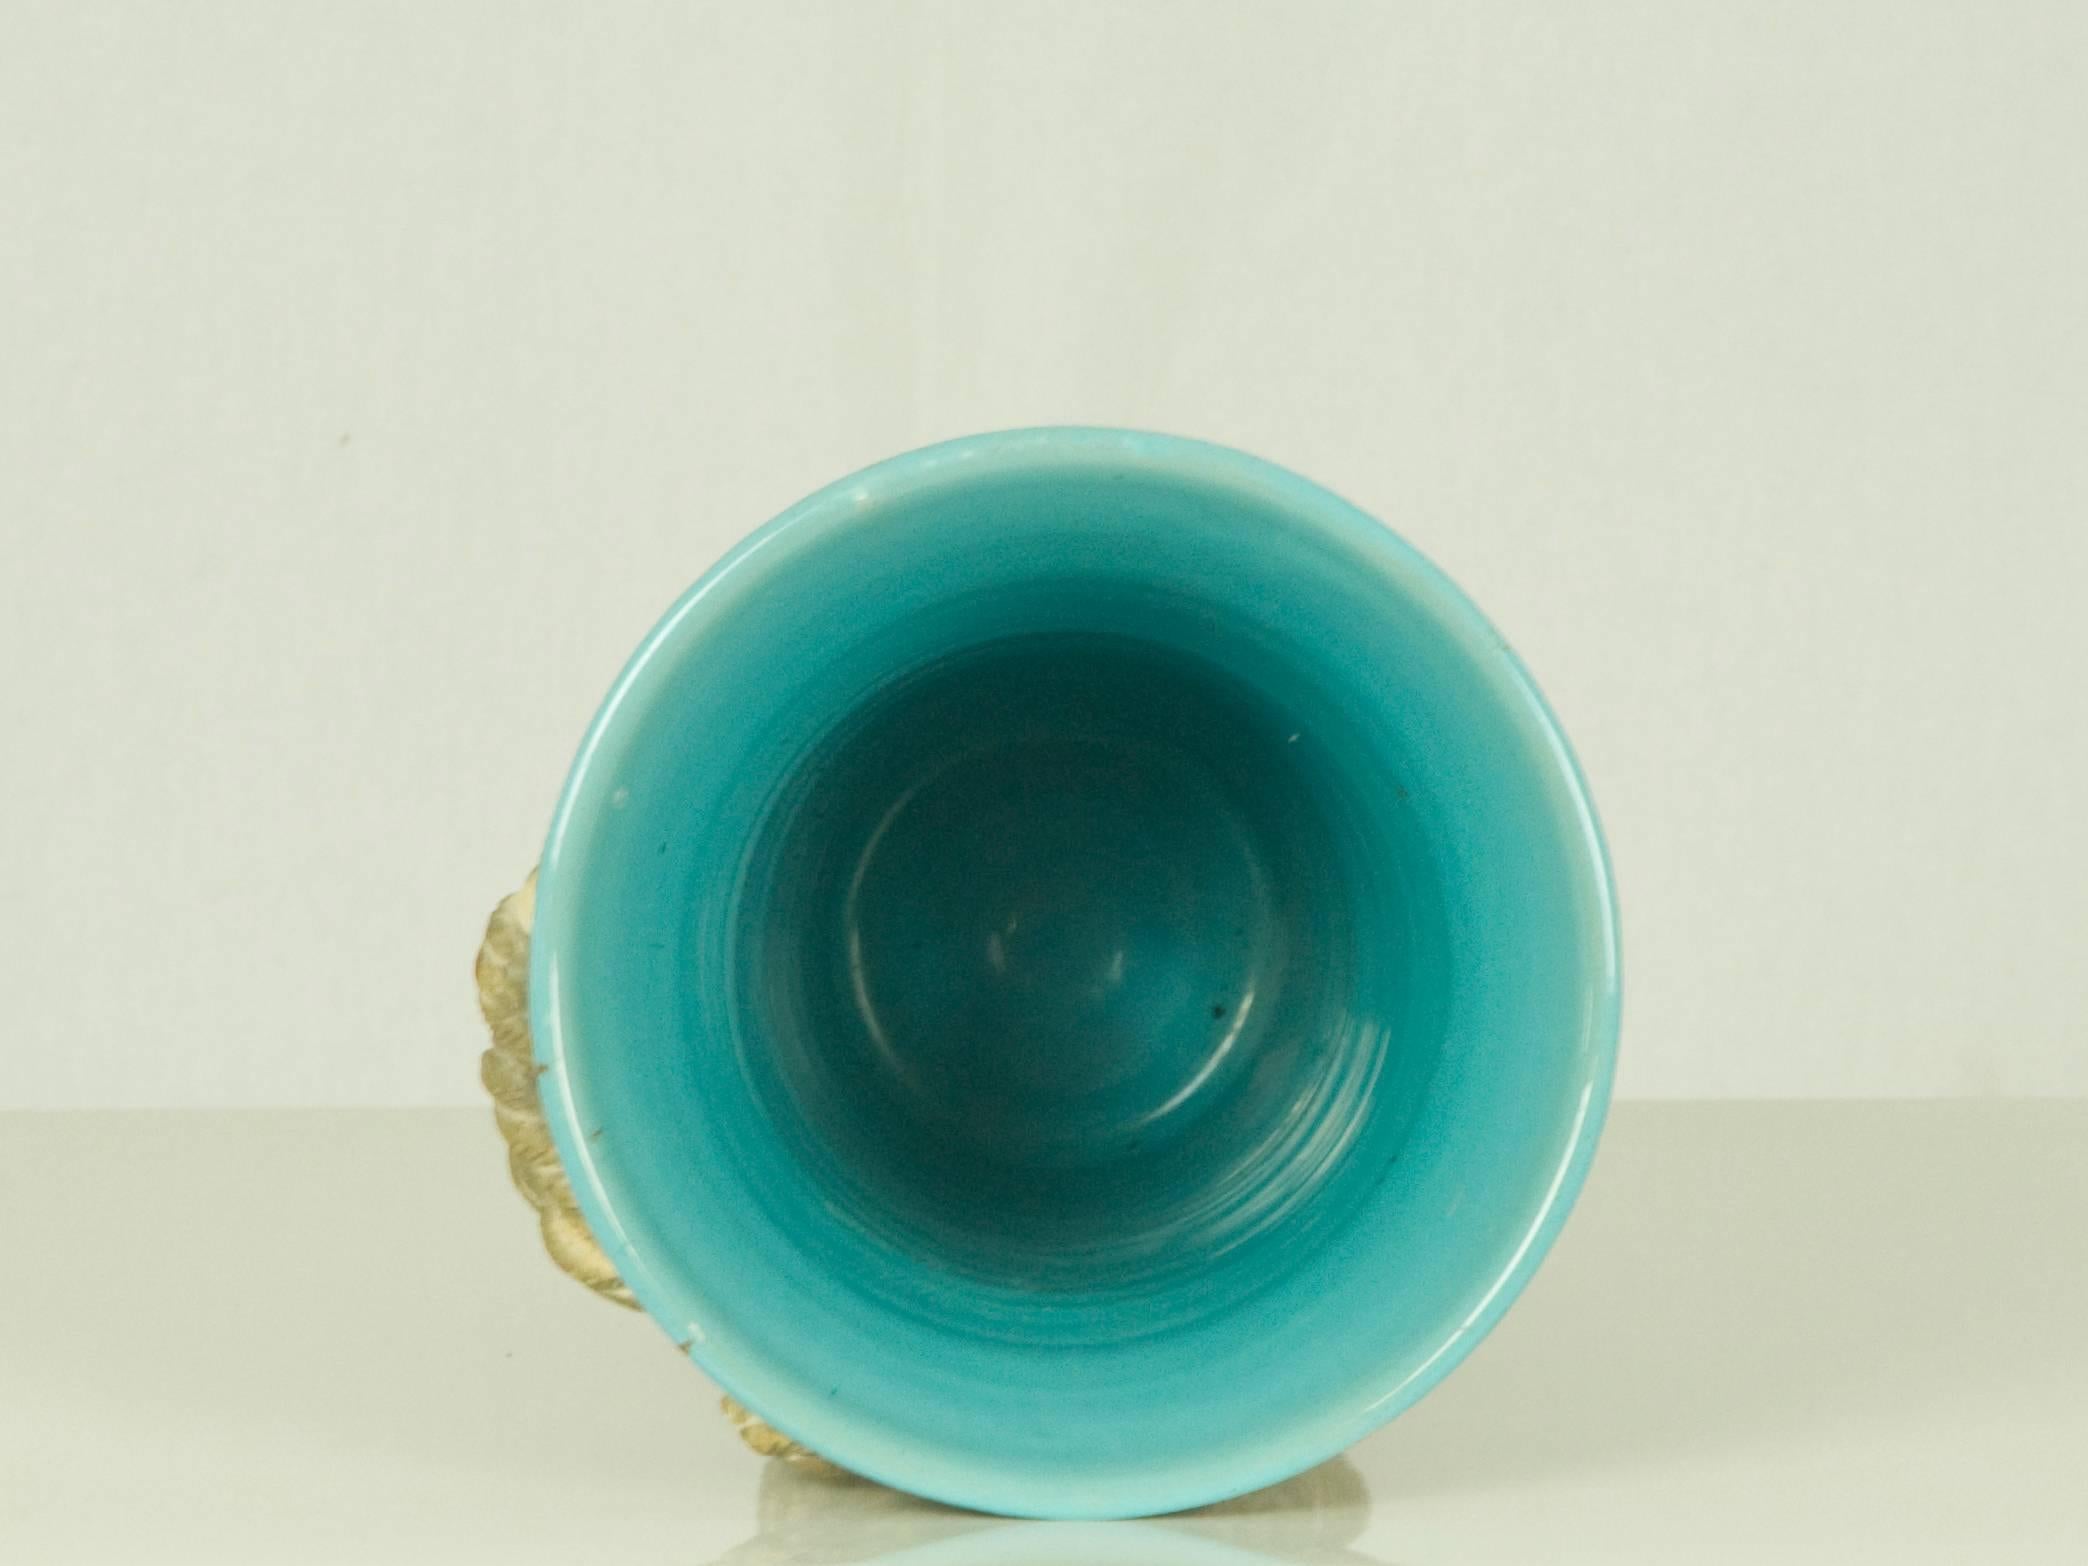 Italian Brown & Light Blue Ceramic Vase by Ugo Zaccagni for Zaccagnini Ceramiche, 1940s